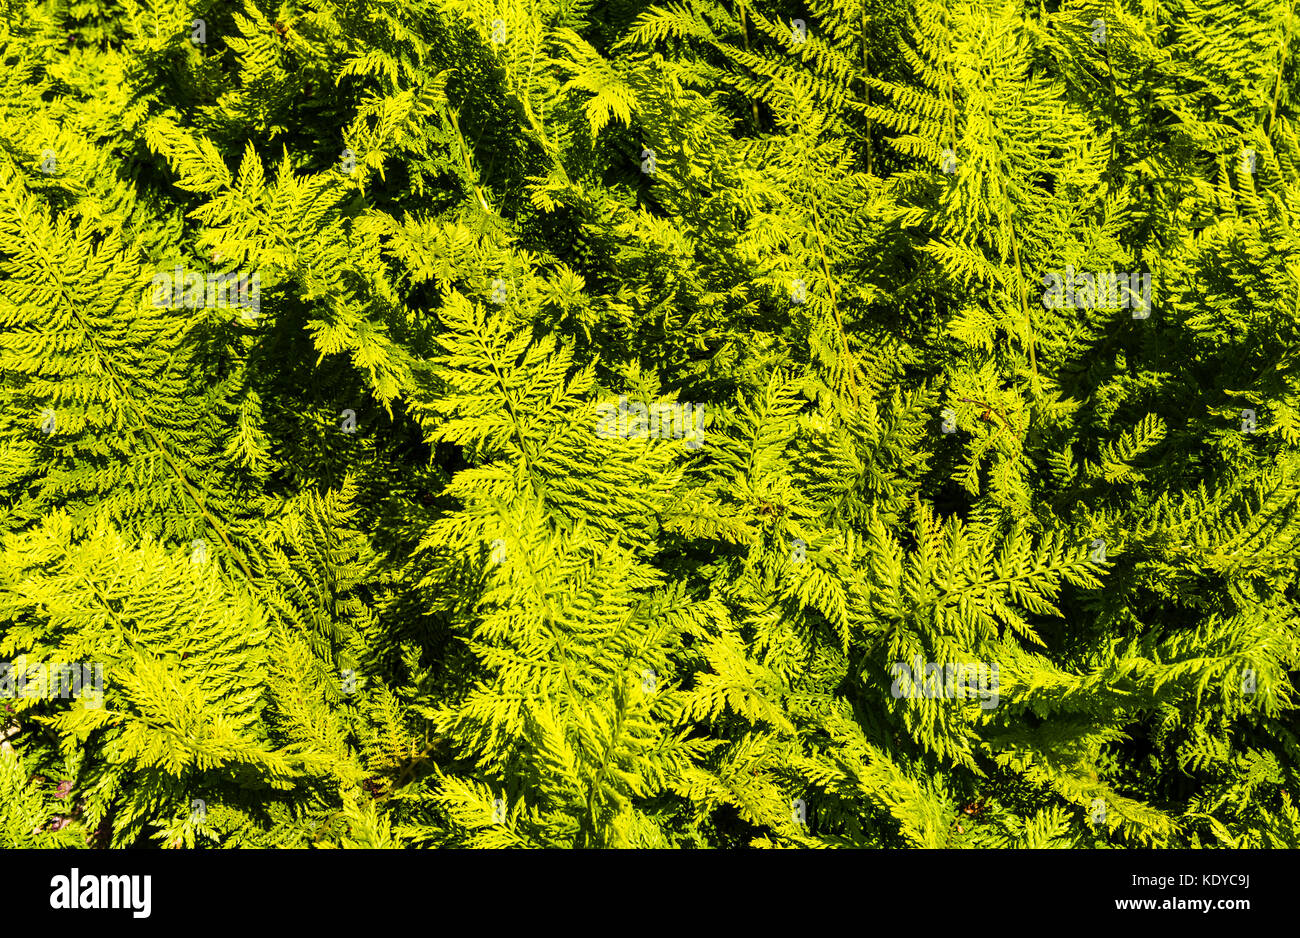 Swathe of fern fronds at Sissinghurst Gardens, Kent, UK Stock Photo